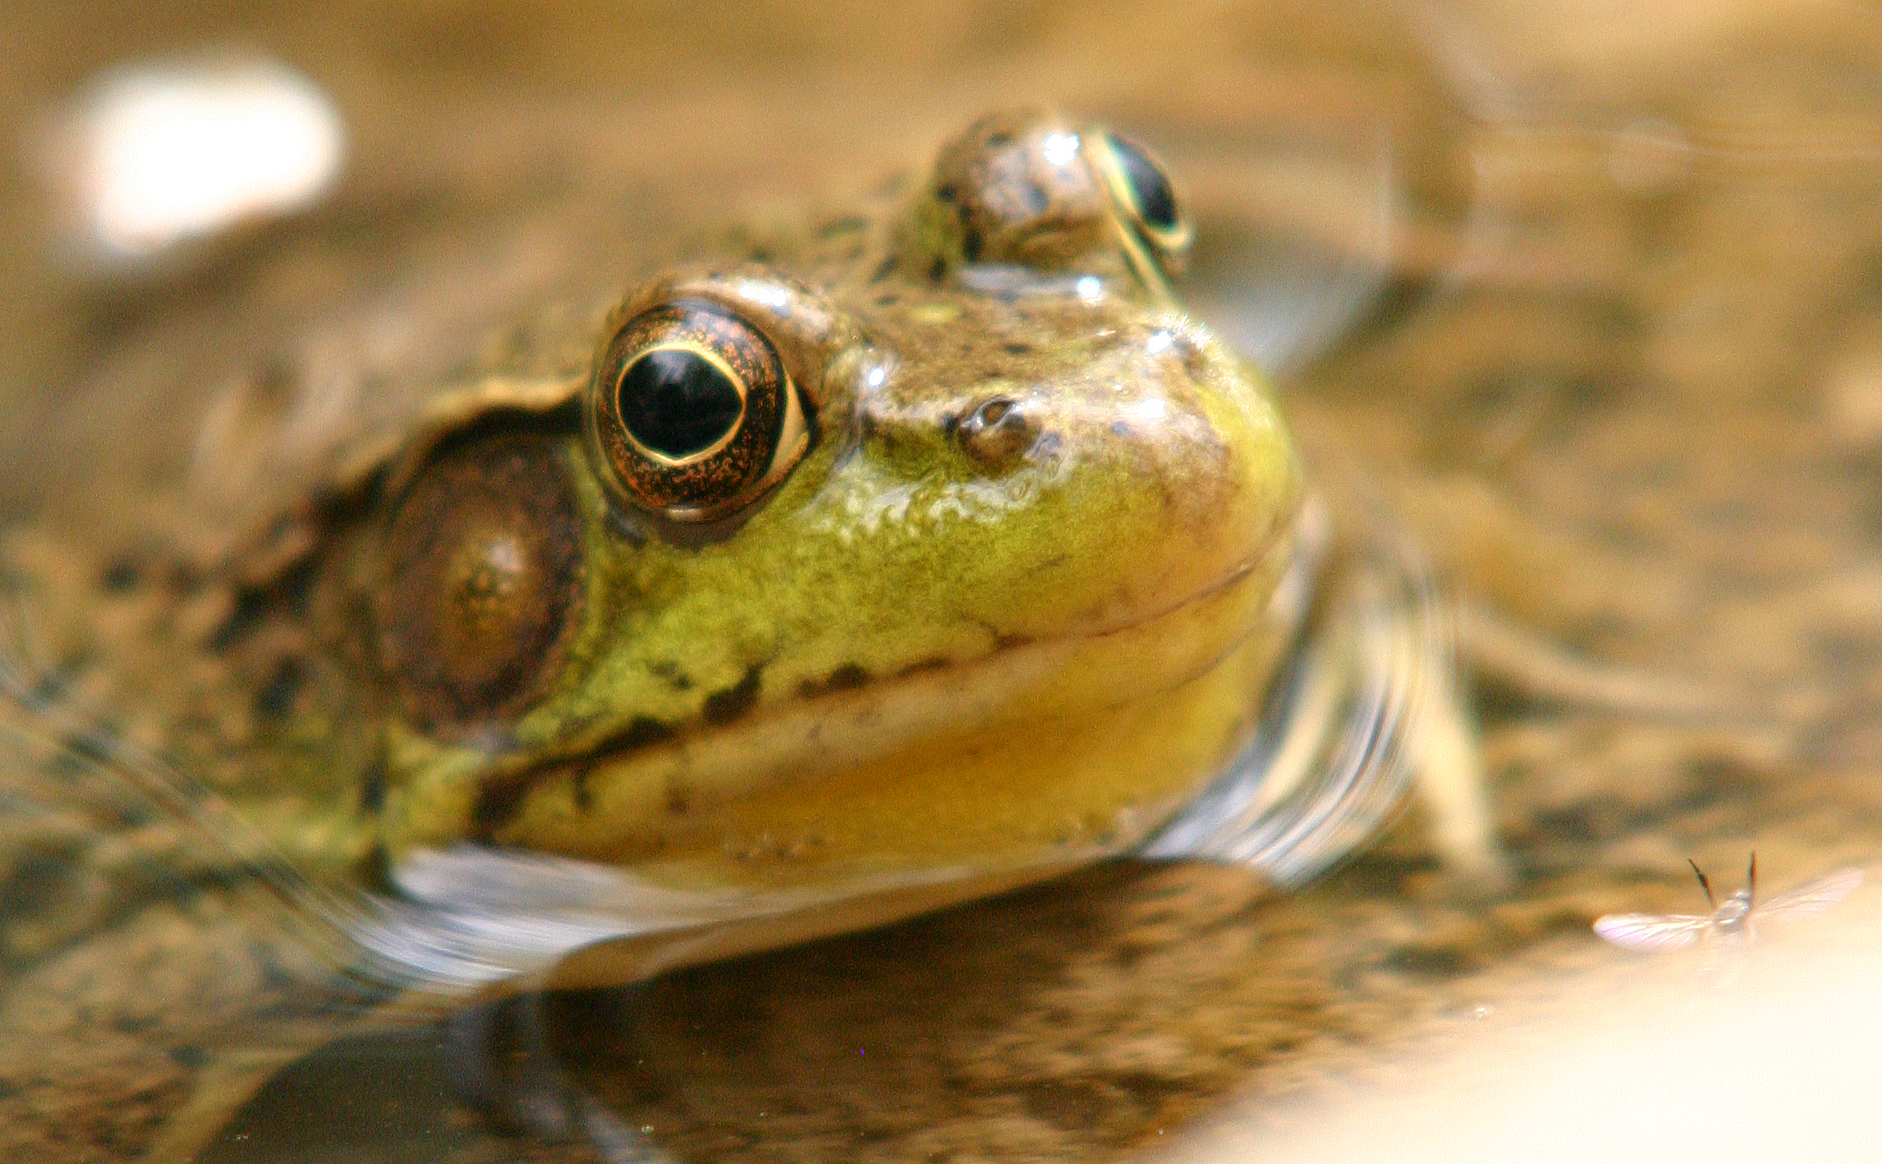 a close - up s of the top half of a frog's head with eyes open